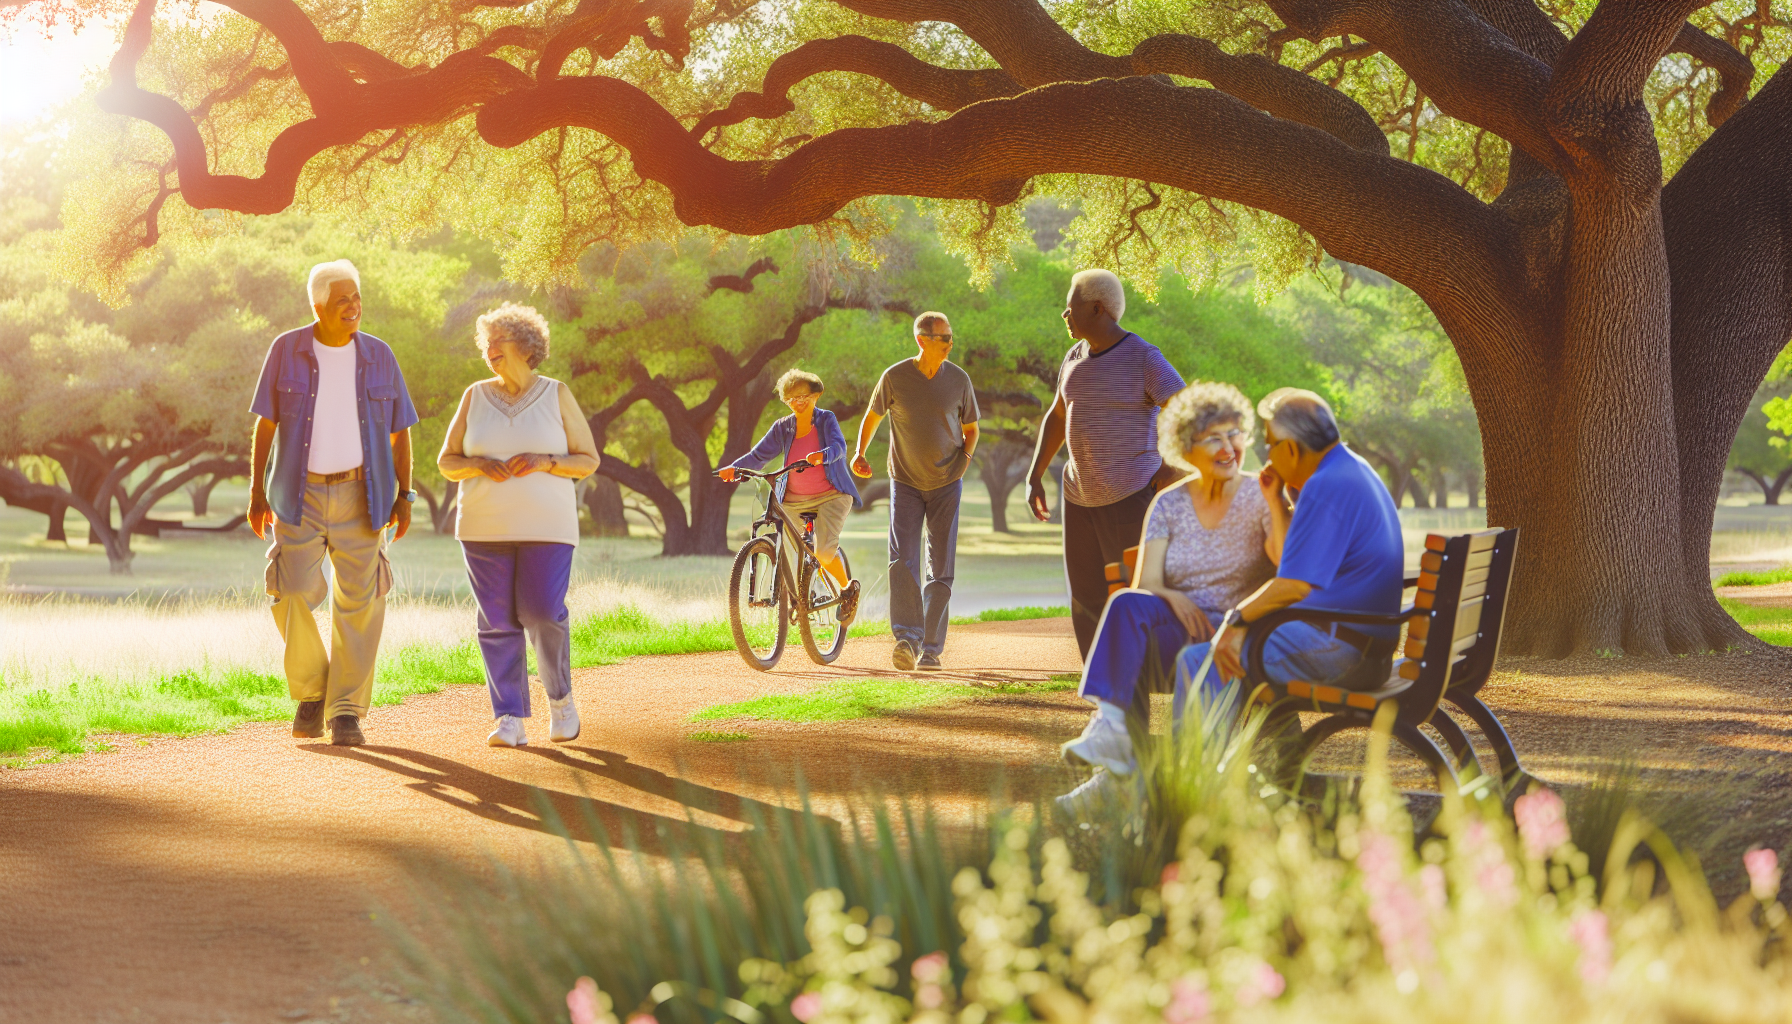 Retirees enjoying outdoor activities in Texas